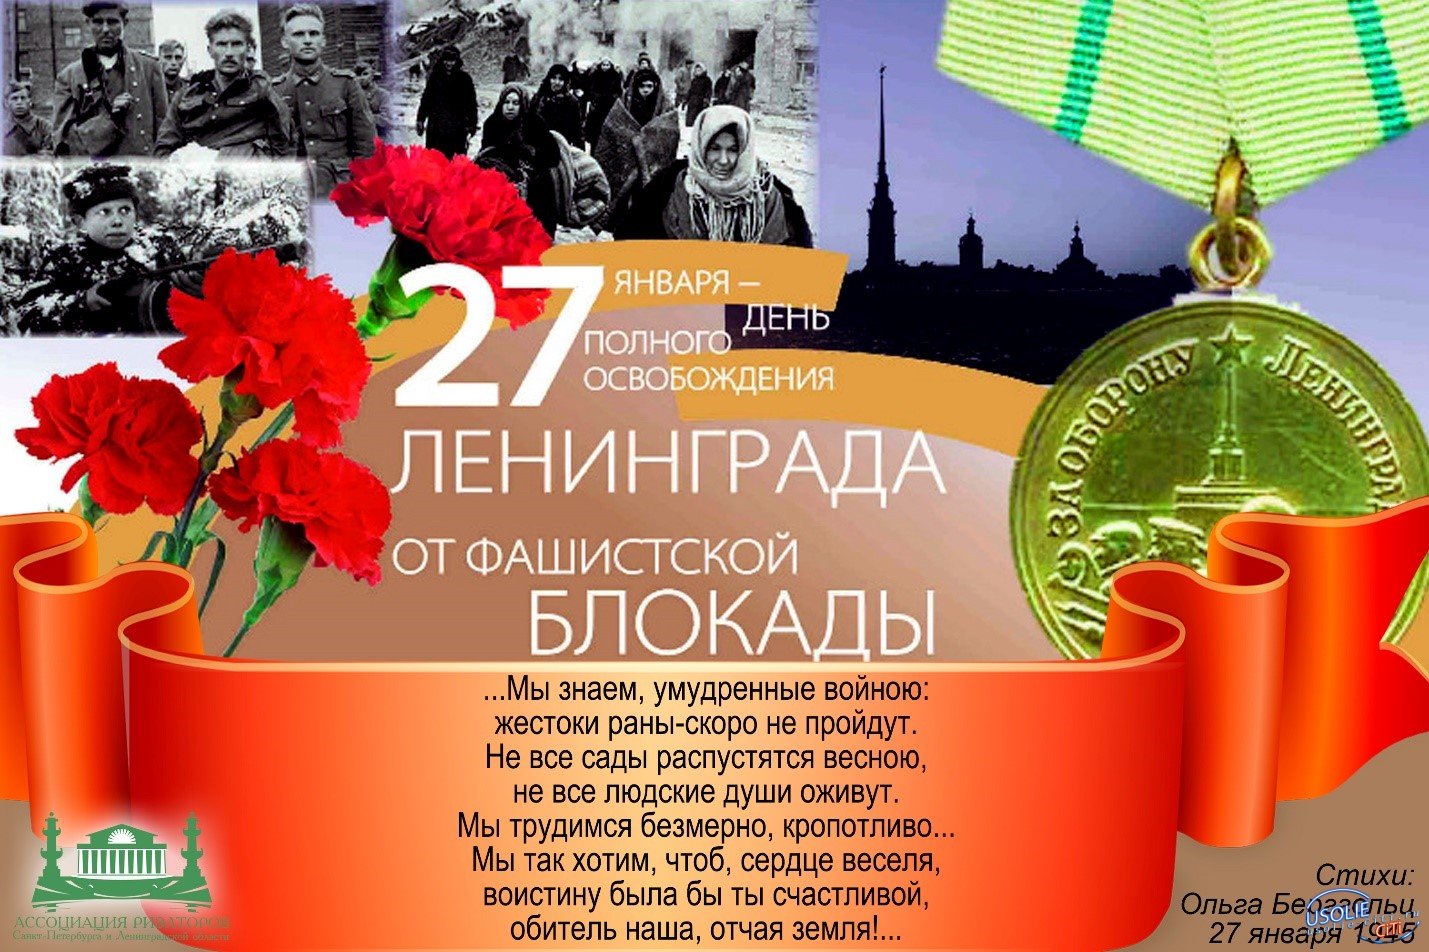 Сегодня День снятия блокады Ленинграда. Мэр Усолья поздравляет.   В Усольском районе звучат поздравления